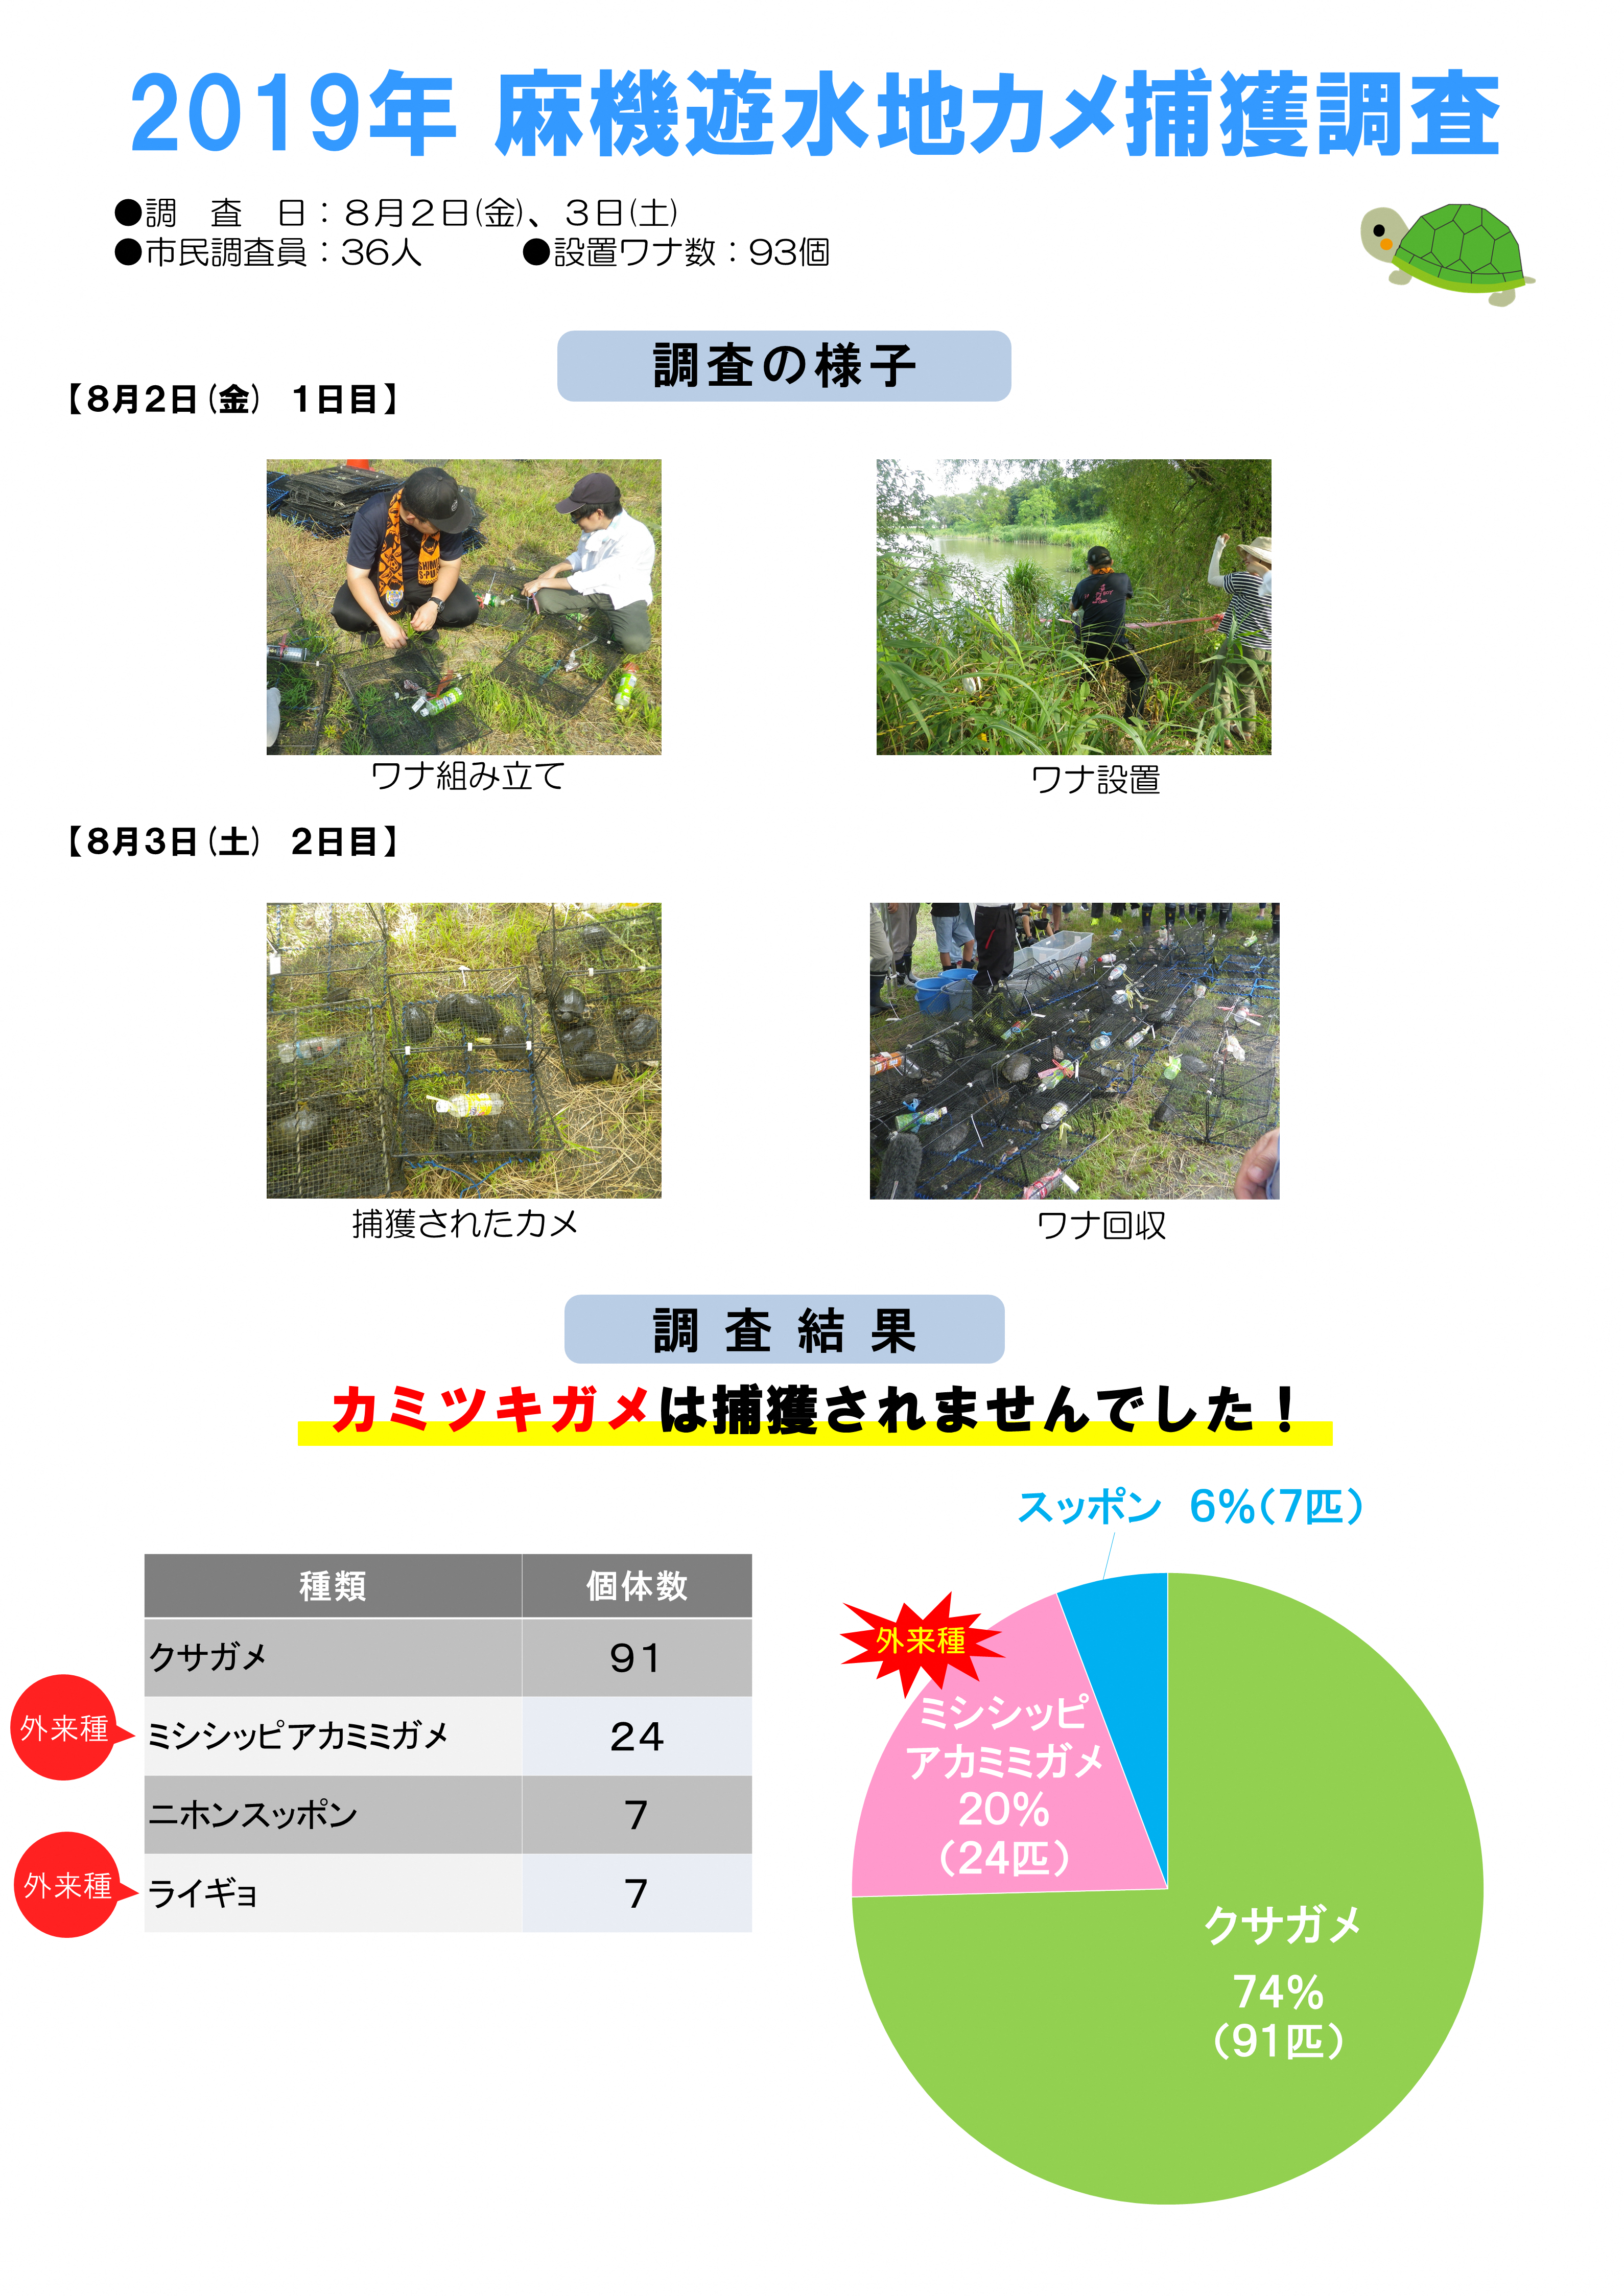 https://www.shizutan.jp/learning/2019/09/04/images/2019%E5%B9%B4%E3%80%80%E3%82%AB%E3%83%A1%E3%83%91%E3%83%8D%E3%83%AB.png